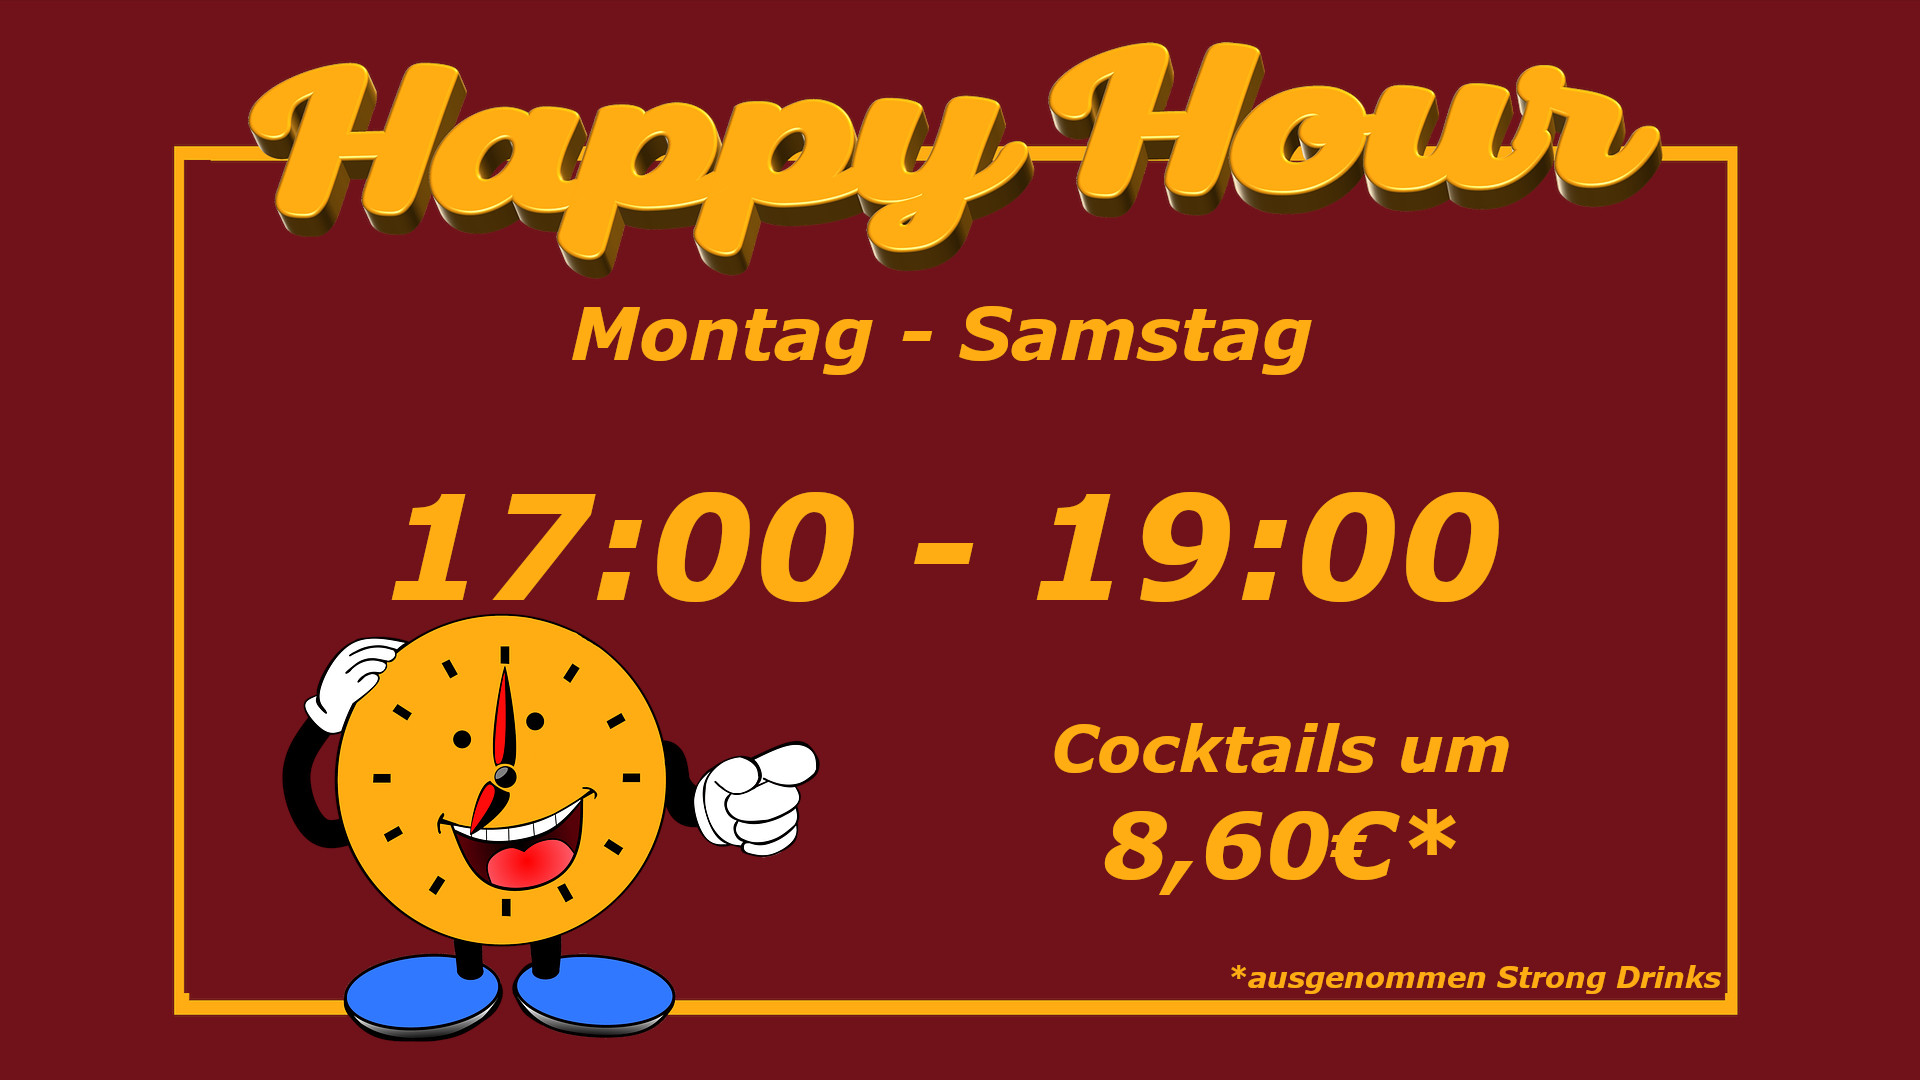 Unsere Happy Hour geht täglich von Montag bis Samstag von 17 bis 19 Uhr. Das gilt für alle Cocktails ausgenommen unserer Strong Drinks.